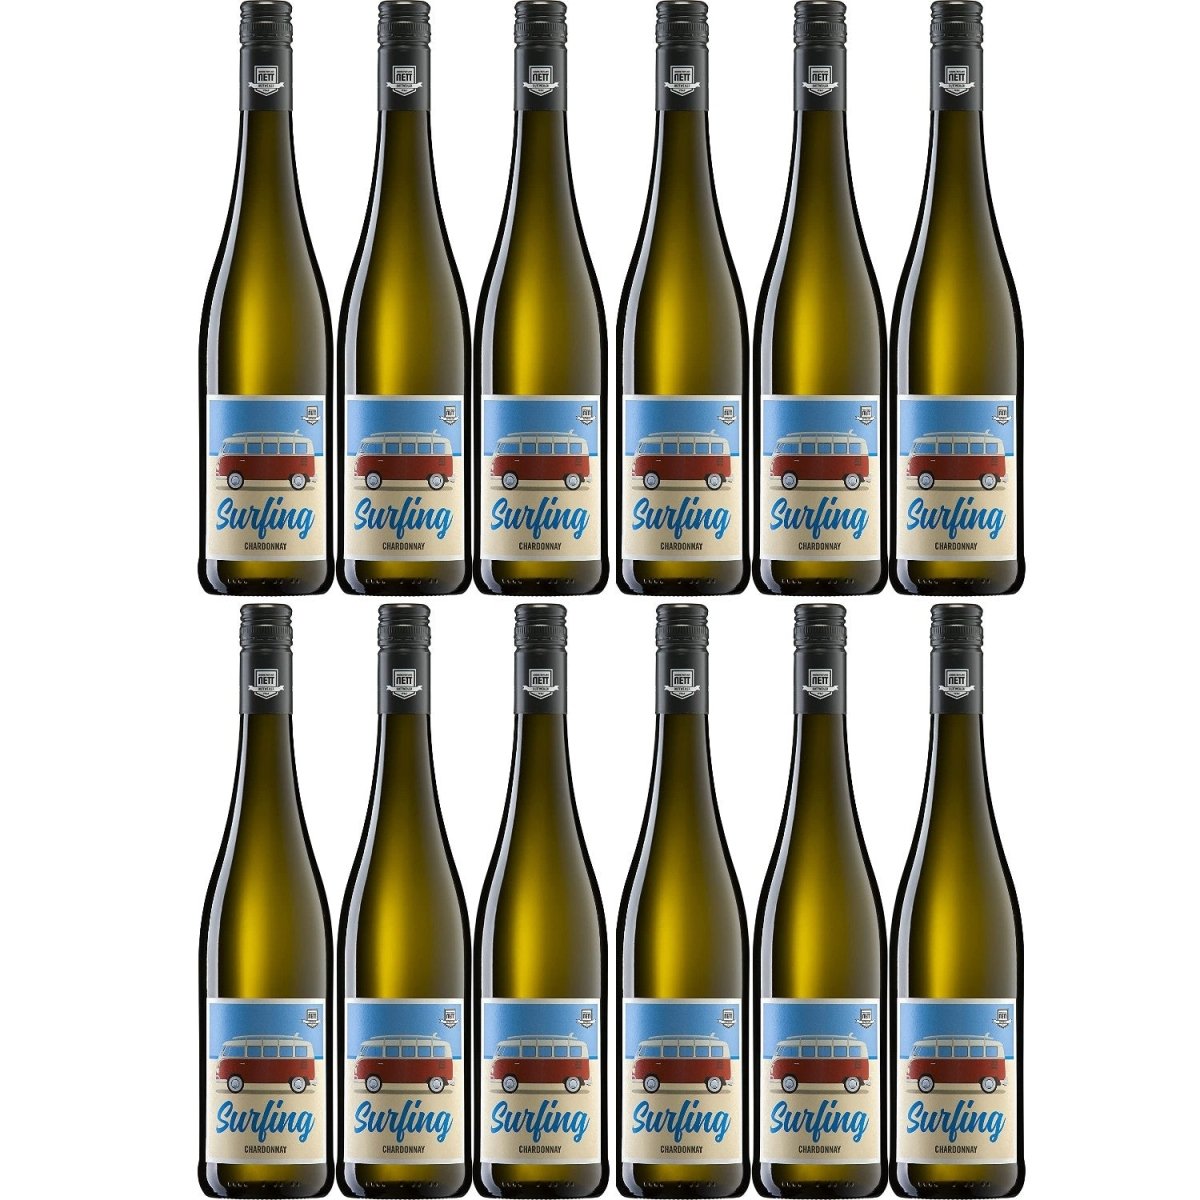 Bergdolt-Reif & Nett Surfing Chardonnay Weißwein Wein trocken Pfalz (12 x 0,75l) - Versanel -